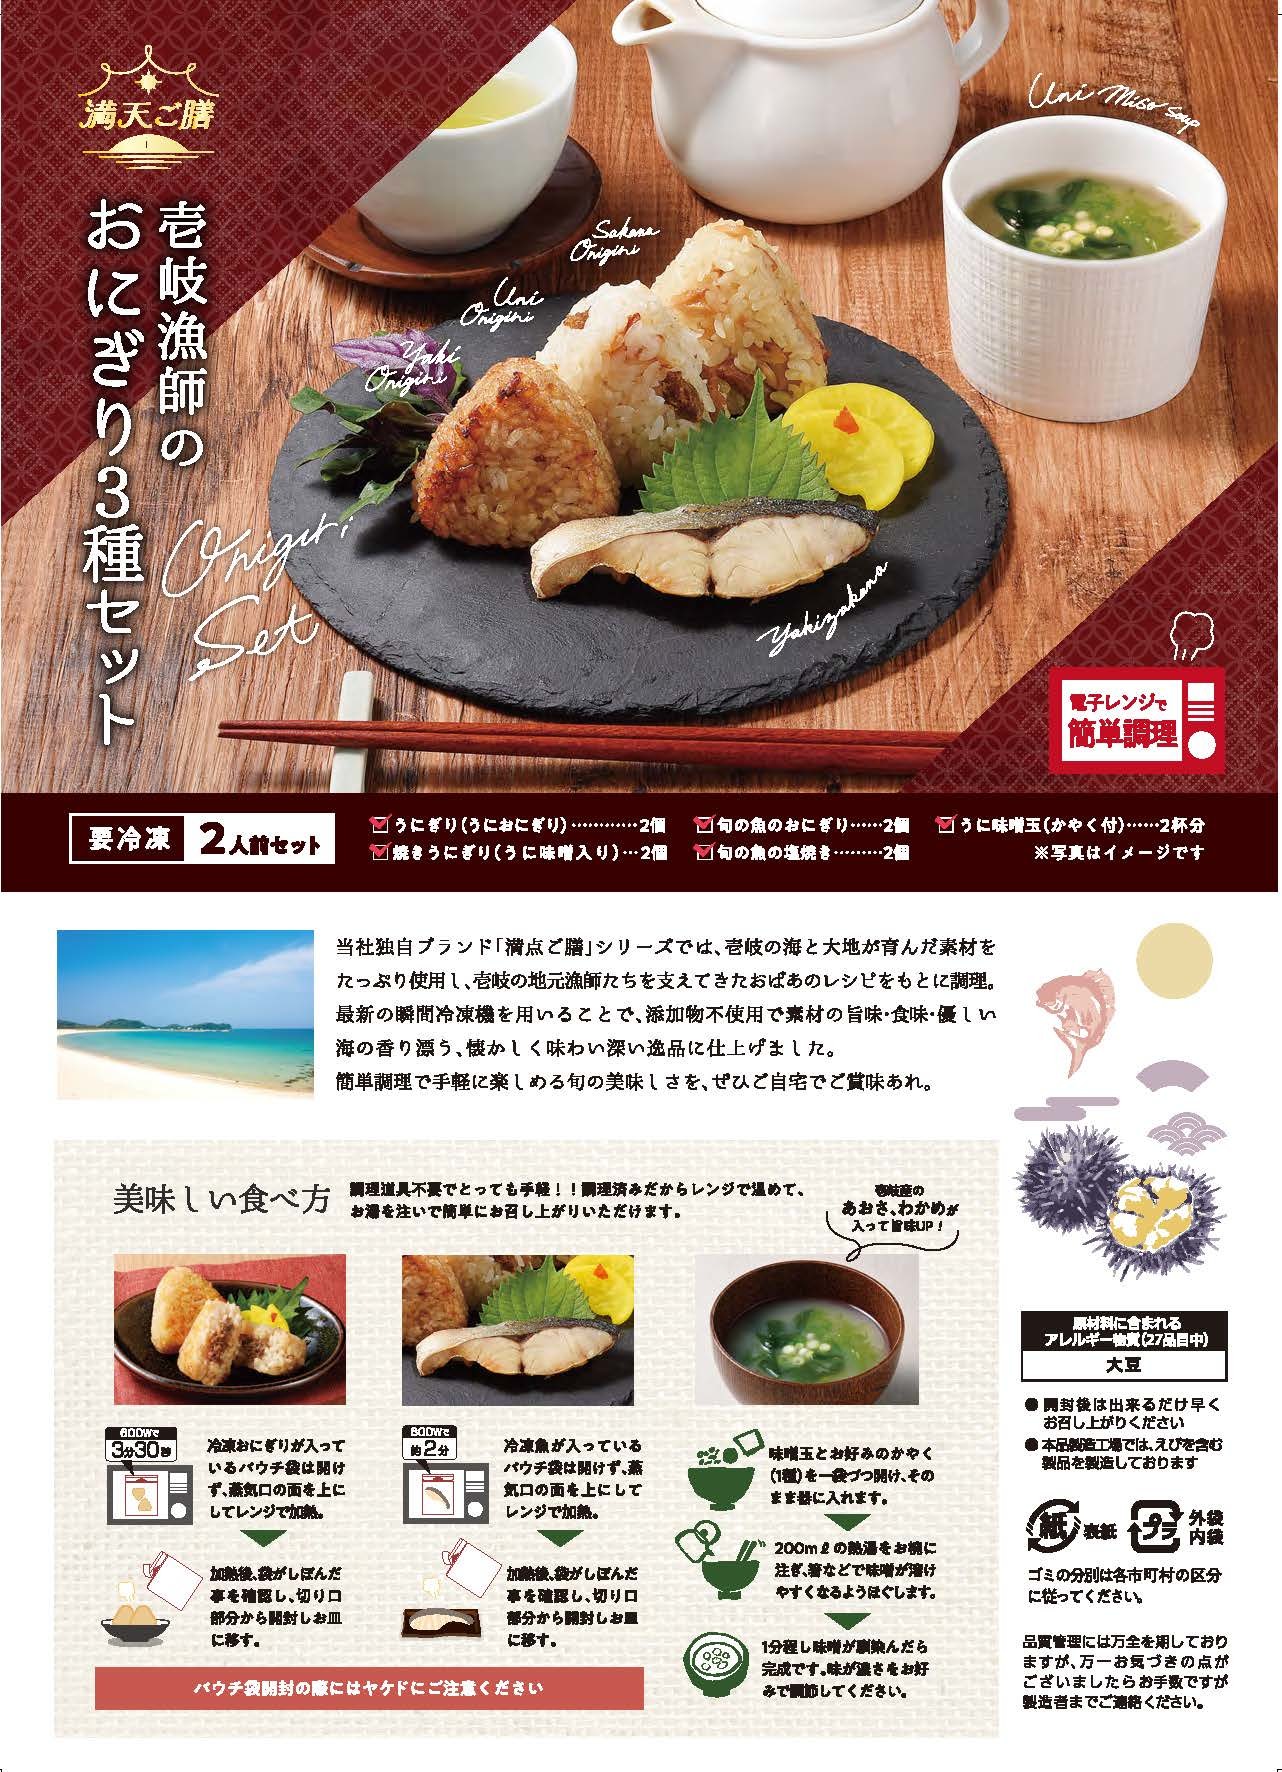 神戸の人気食パン専門店が
「食パンのサブスク」を11月19日スタート　
スマホで手軽に申し込みできる！食パンの定額サービス